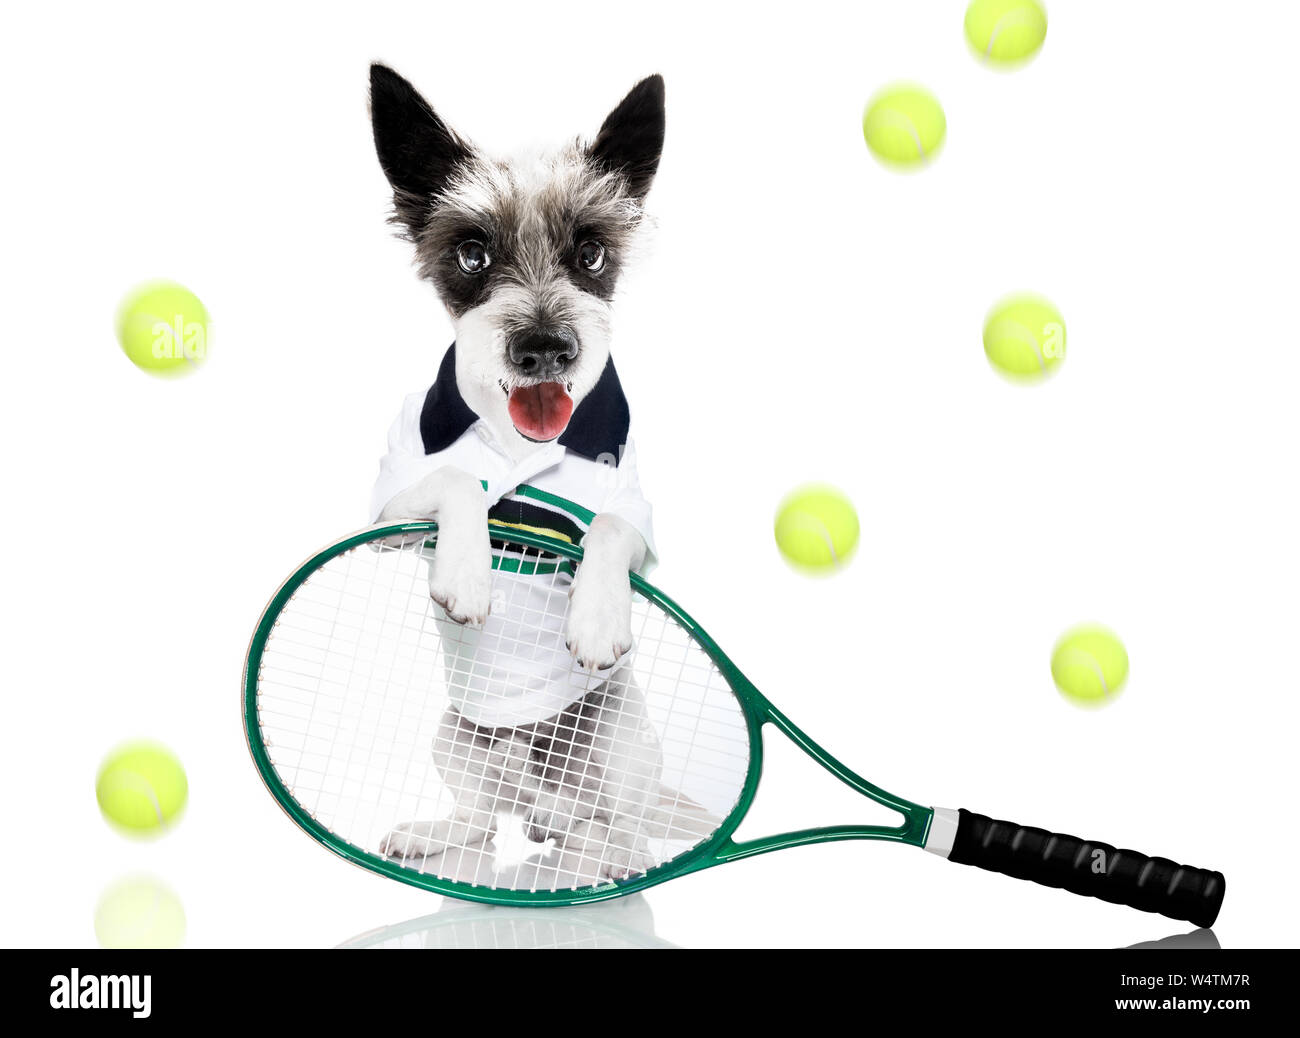 Perro caniche con propietario como jugador de tenis con pelota y raqueta  raqueta o aislado sobre fondo blanco, listo para jugar a un juego  Fotografía de stock - Alamy